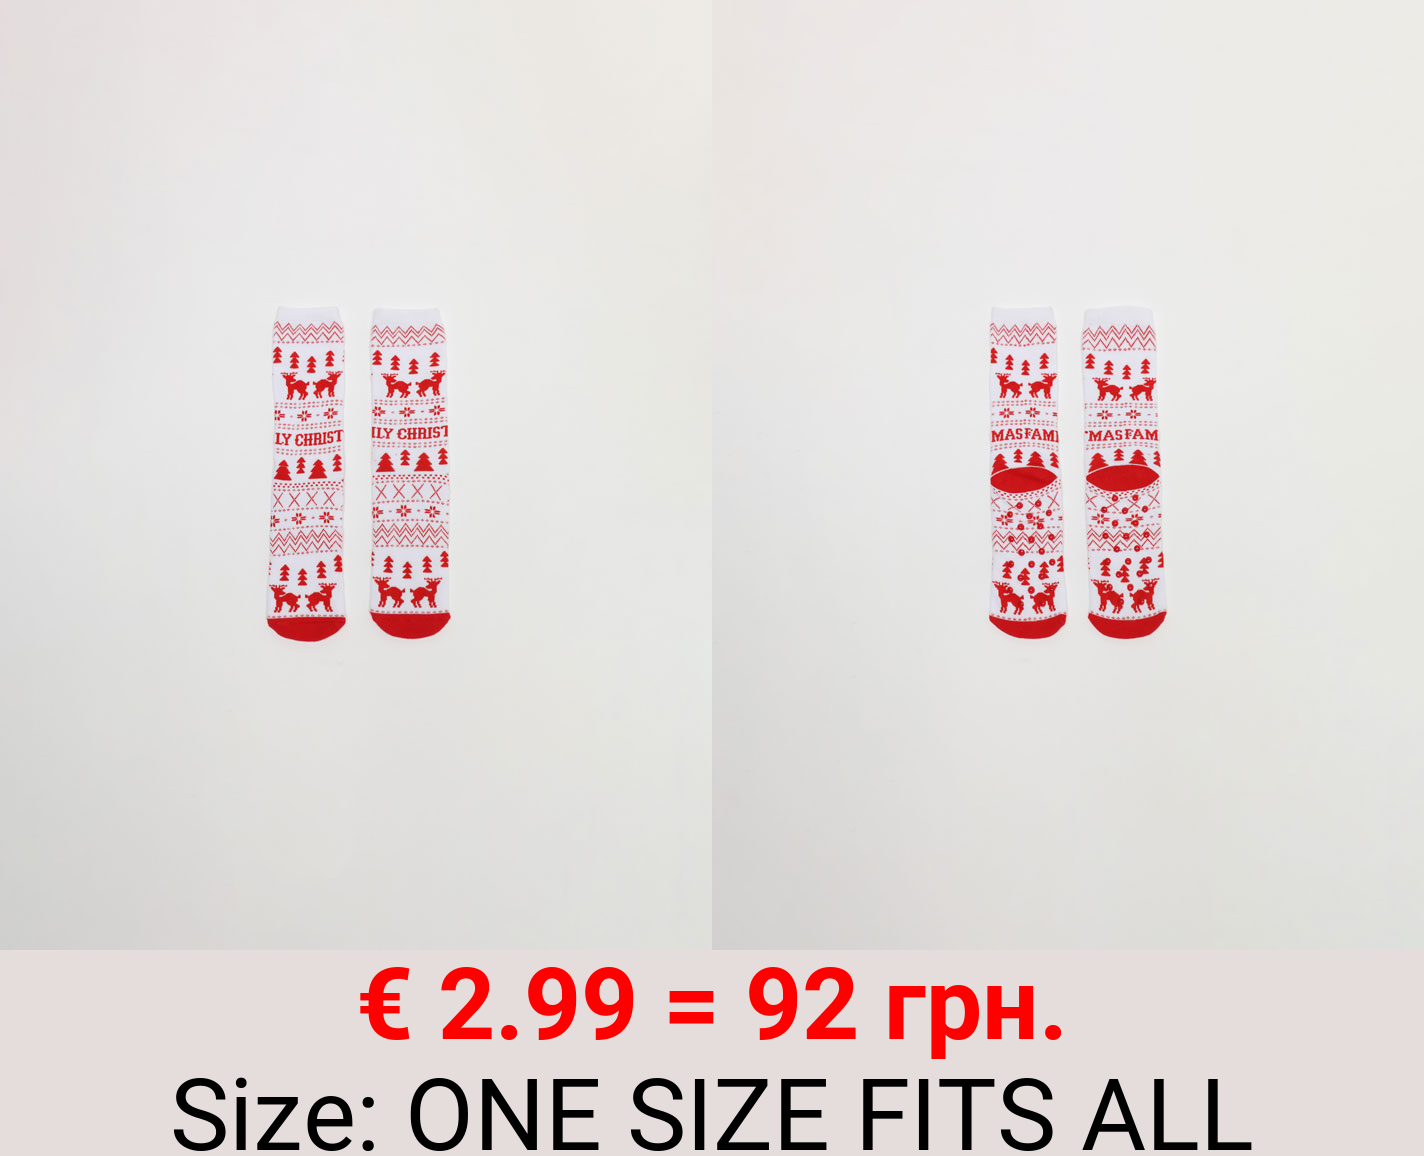 Pair of reindeer family Christmas socks